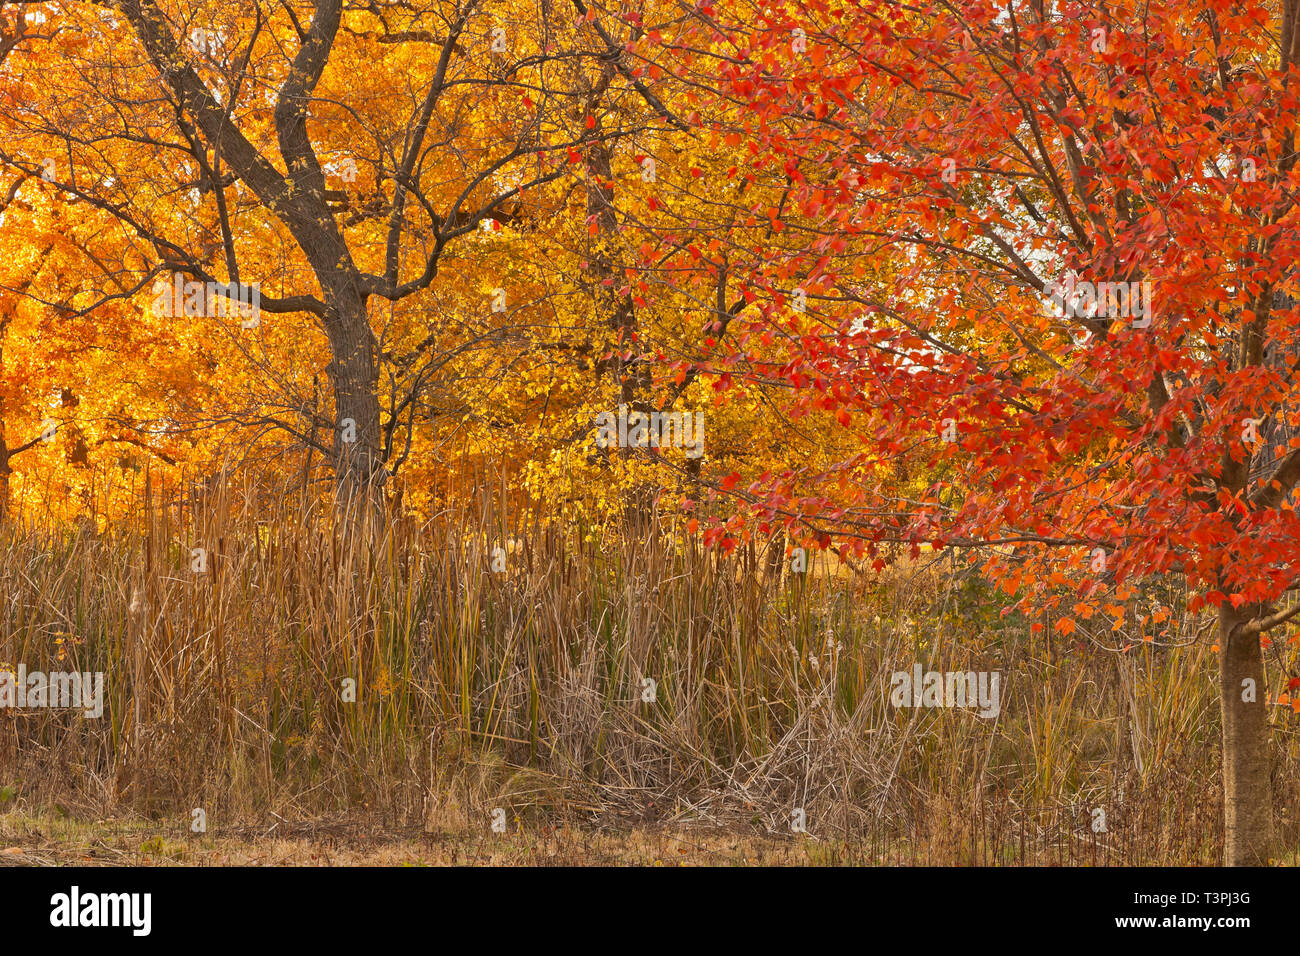 Red fogliame di un acero e colori giallo-arancio in una savana a San Louis Forest Park in autunno. Foto Stock